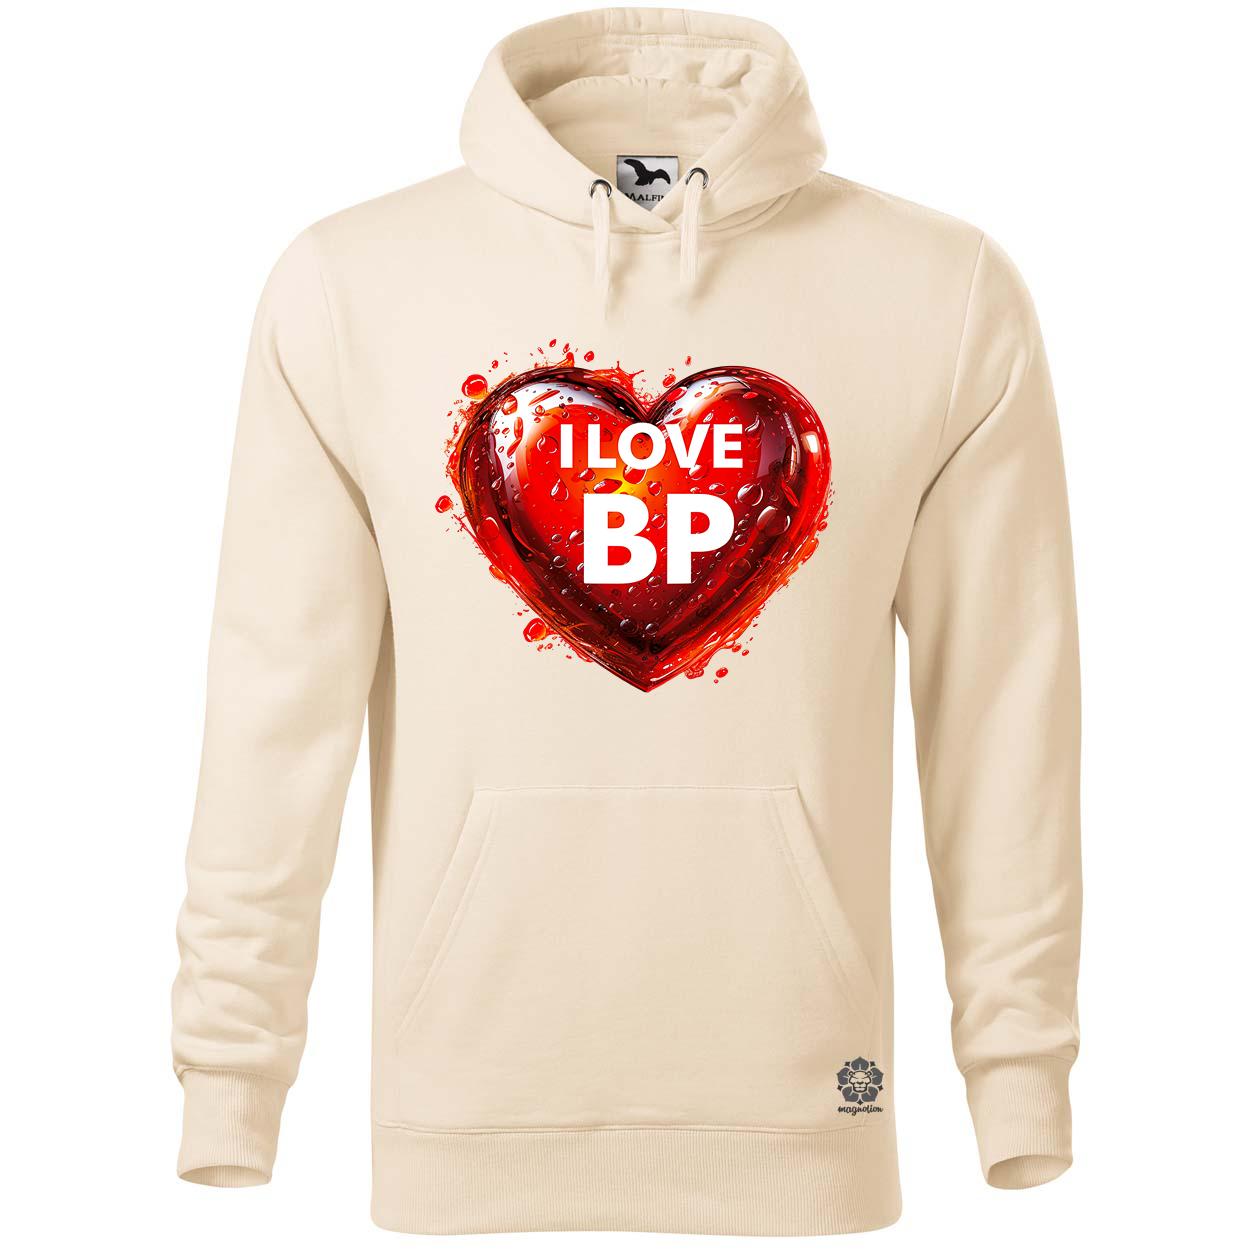 Love BP v14